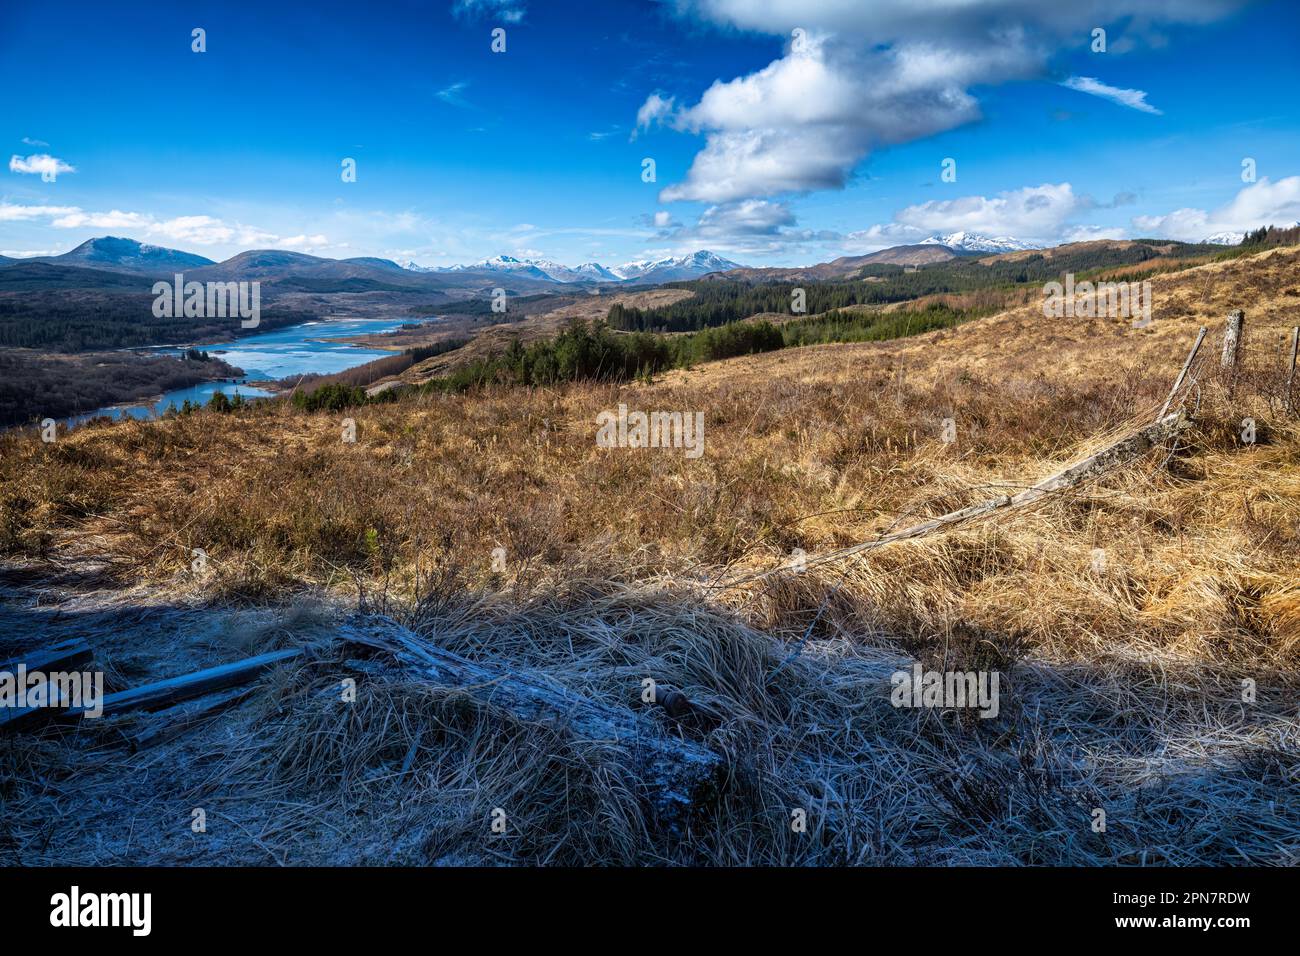 Die oberen Bereiche des Loch Garry haben eine verblüffende Ähnlichkeit mit einer Karte von Schottland, wenn man sie vom richtigen Ort aus betrachtet, es ist einfach so, dass der rechte Stockfoto